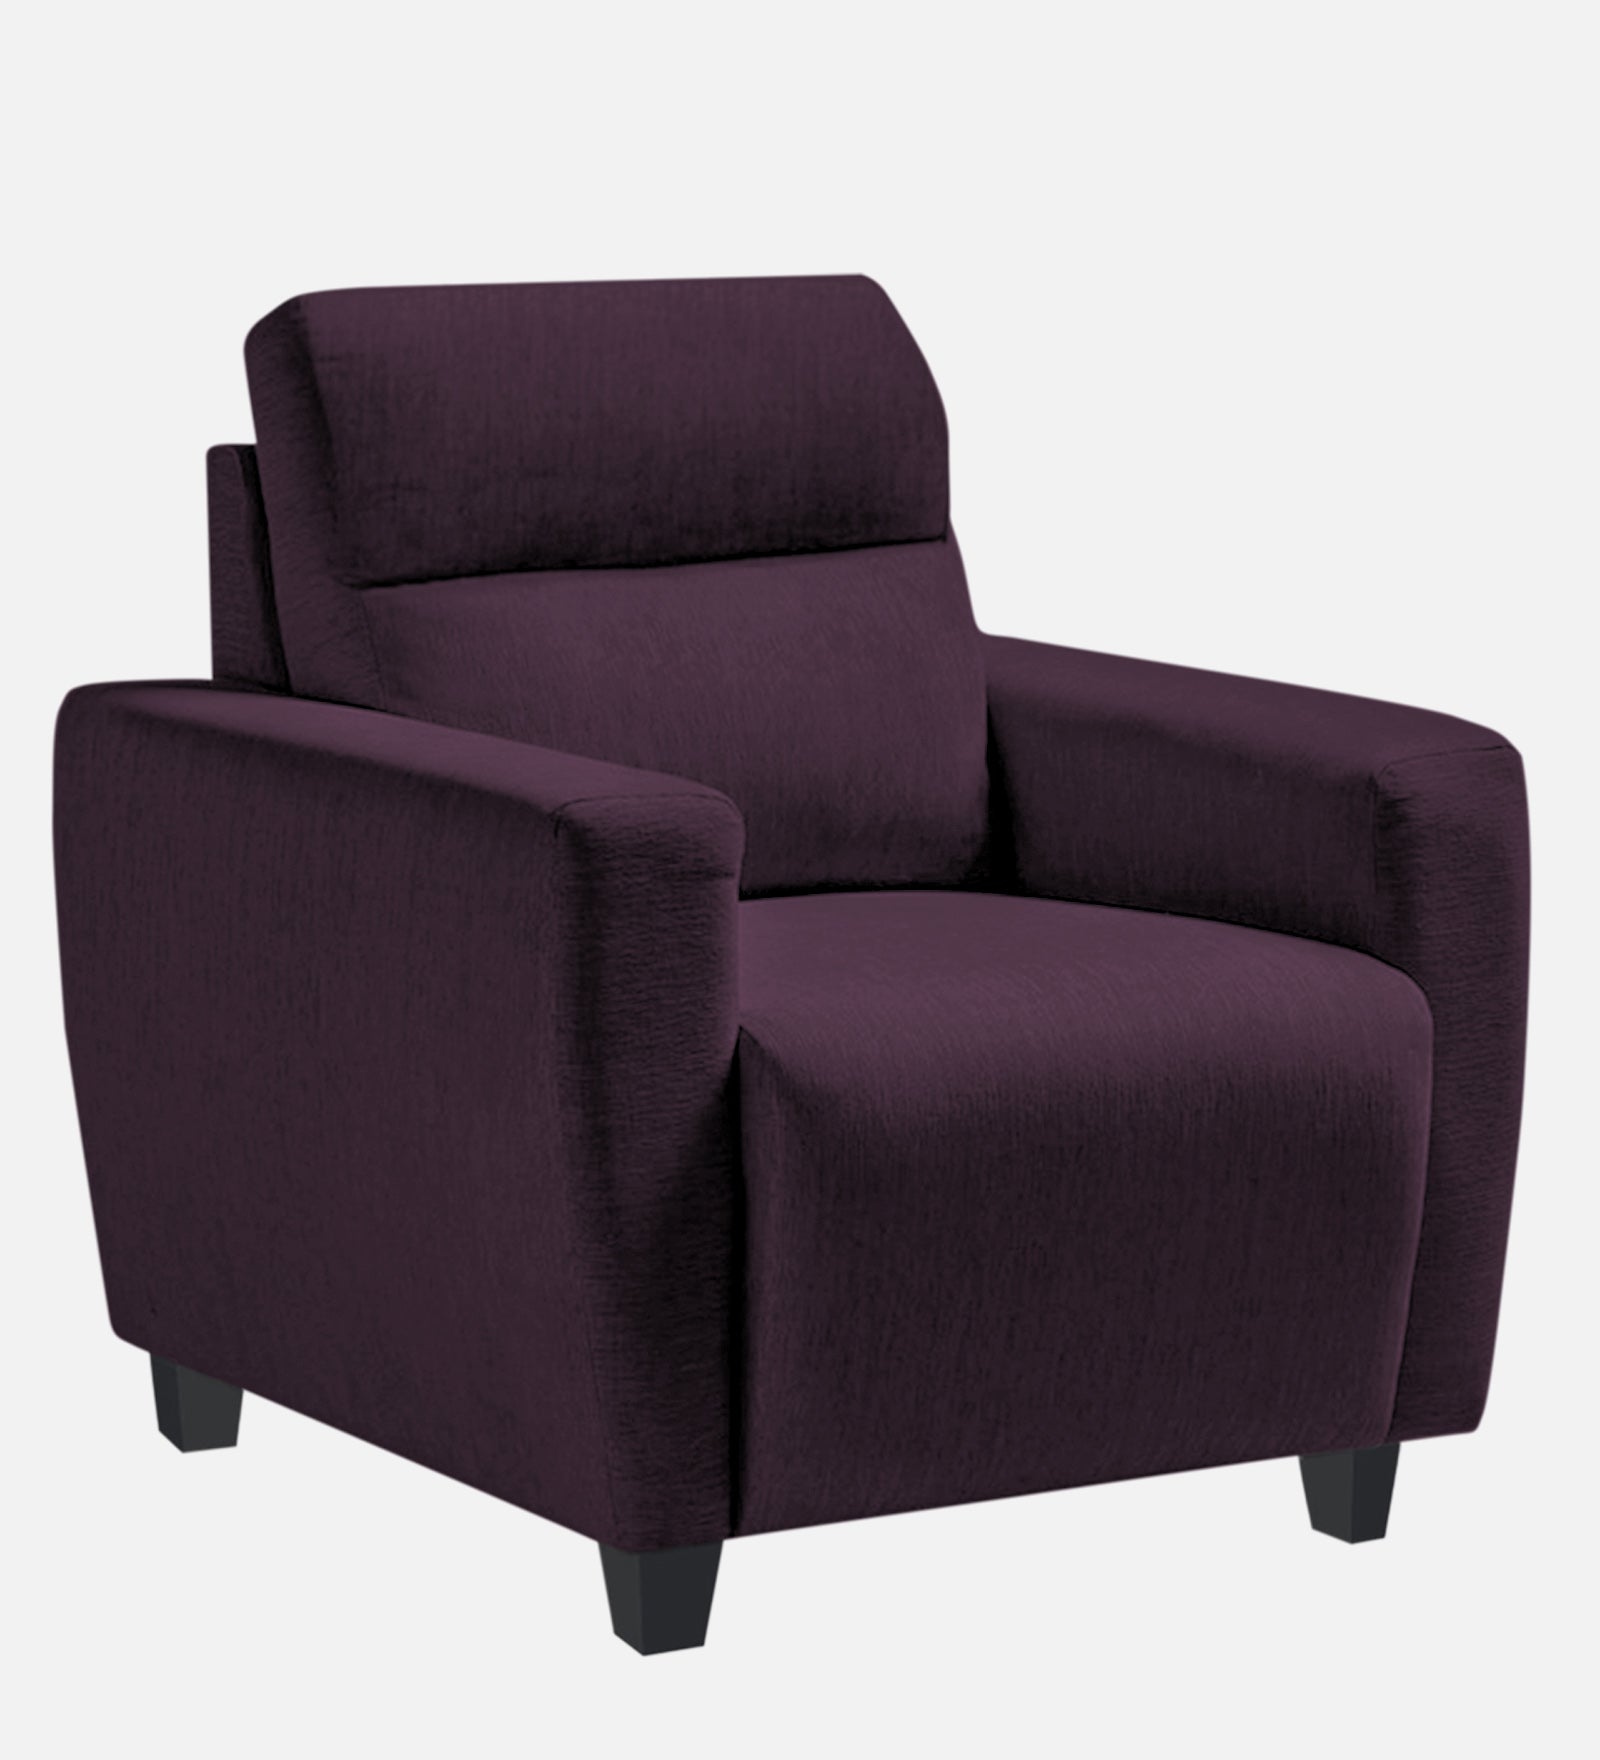 Bakadi Fabric 1 Seater Sofa in Greek Purple Colour